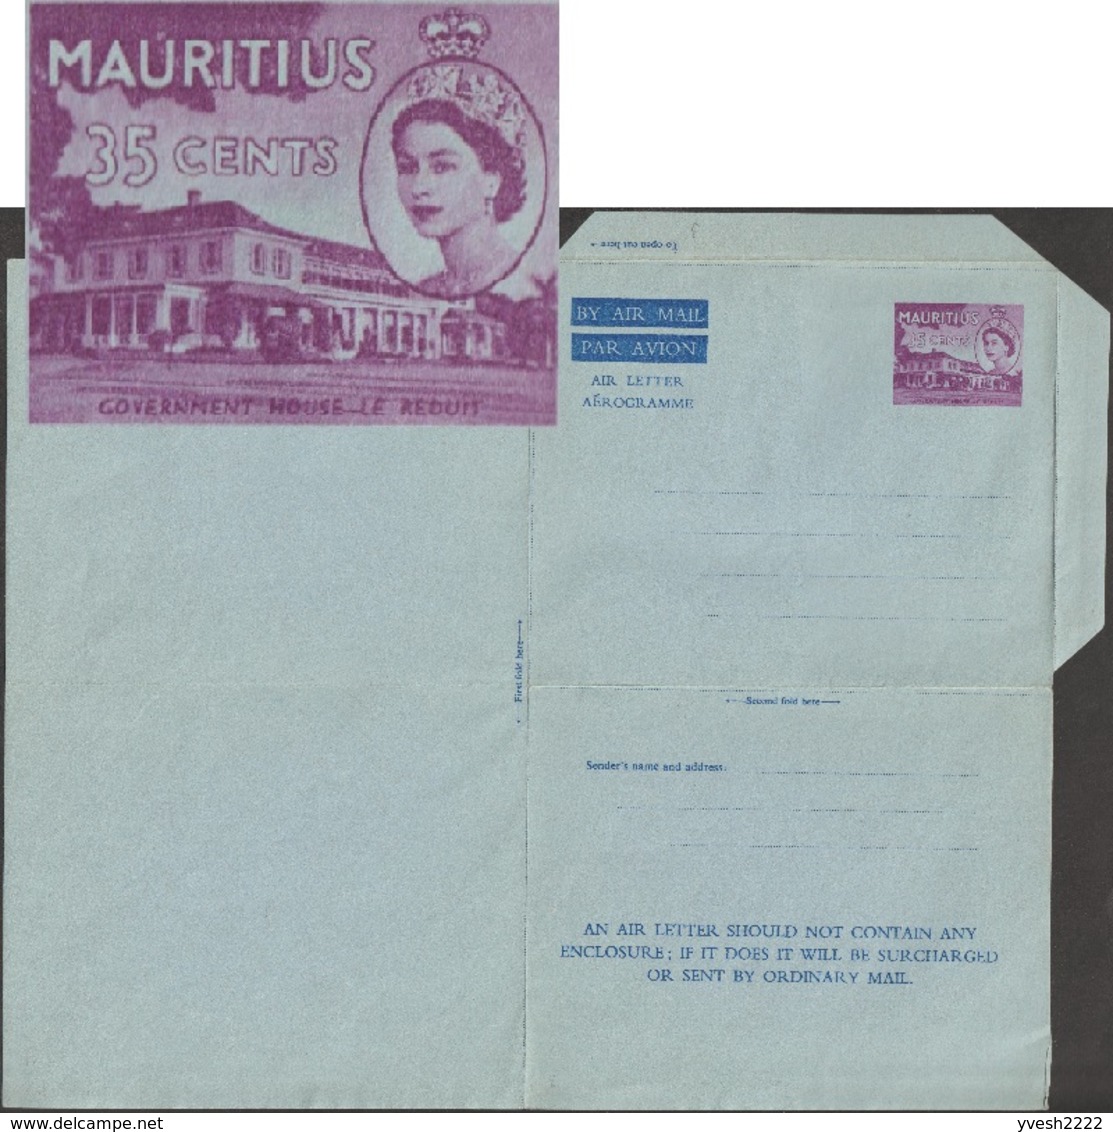 Maurice / Mauritius 1962. Aérogramme Elizabeth II. Le Château Du Réduit, Siège De La Présidence. 3 Lignes D'inscriptions - Châteaux